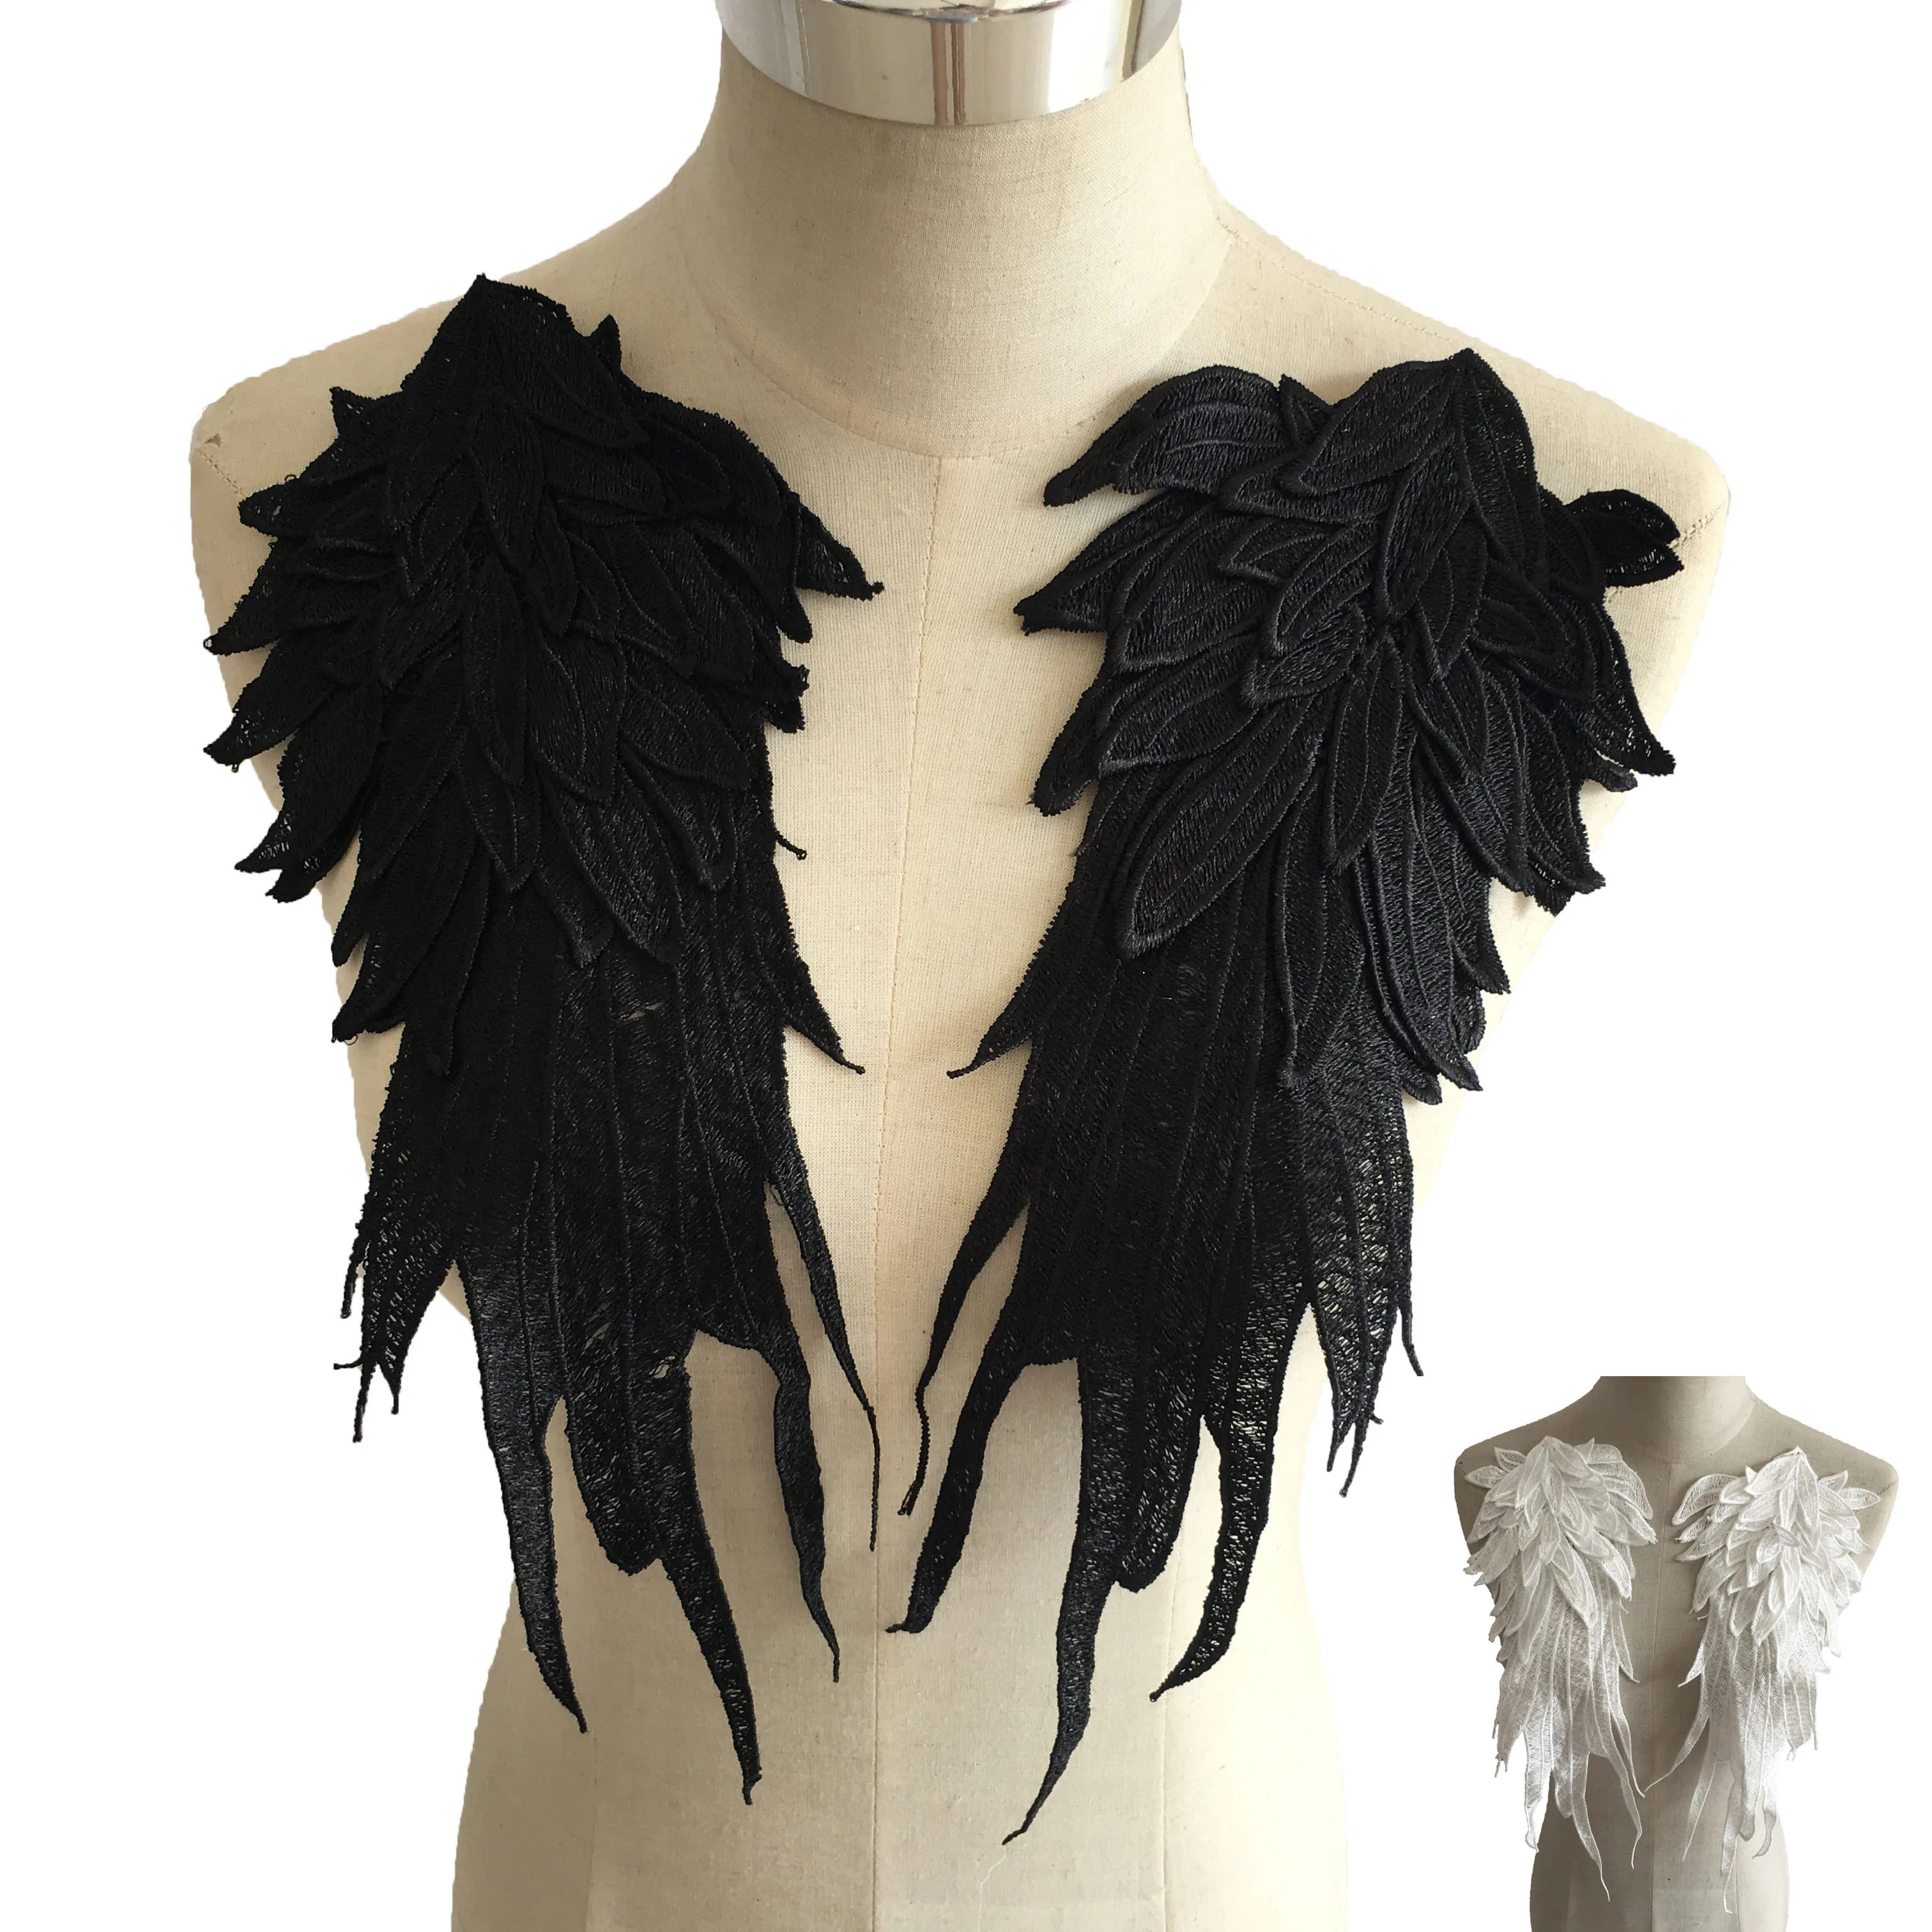 Оптовые продажи 1-10 черно-белых вышитых крыльев из полиэстера, выдолбленных кружев, декоративных аксессуаров для одежды, сделанных своими руками